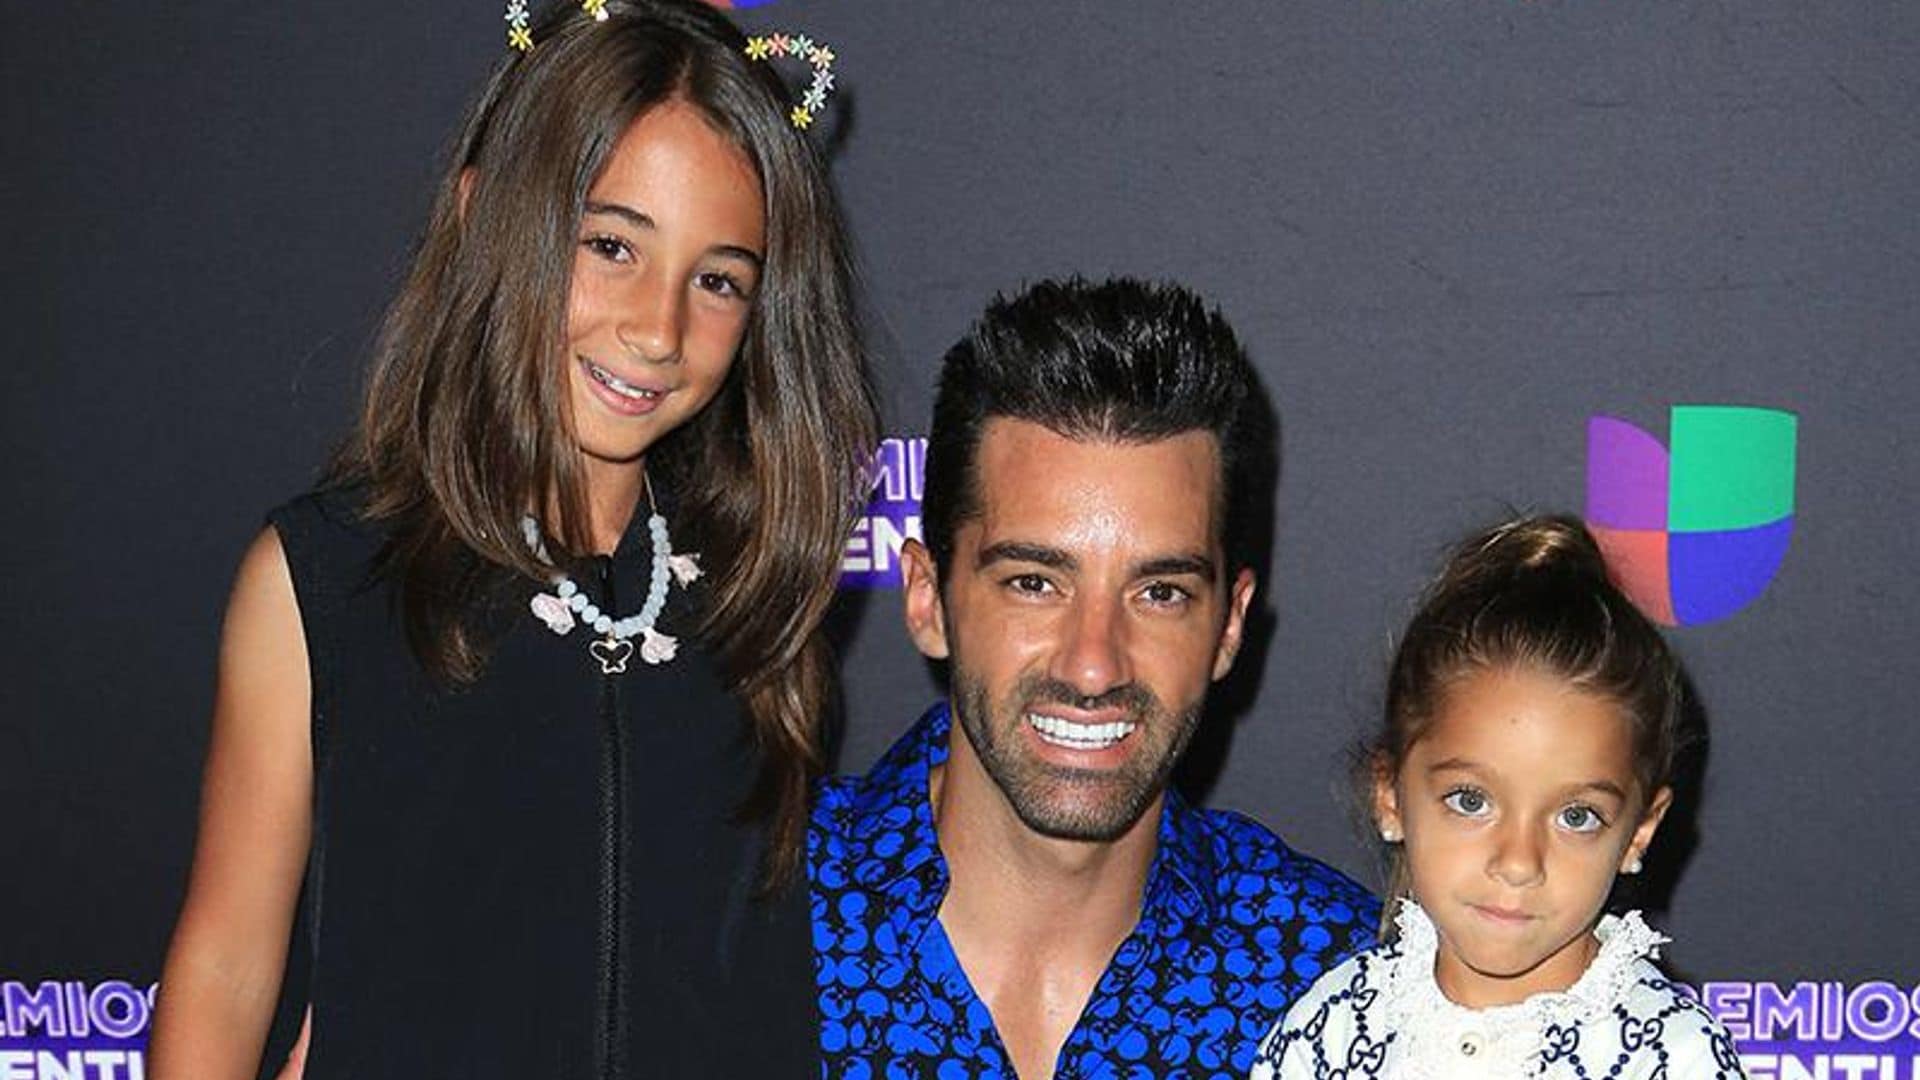 ¡De Gucci en Premios Juventud! La hija de Adamari López y Toni Costa lució muy a la moda